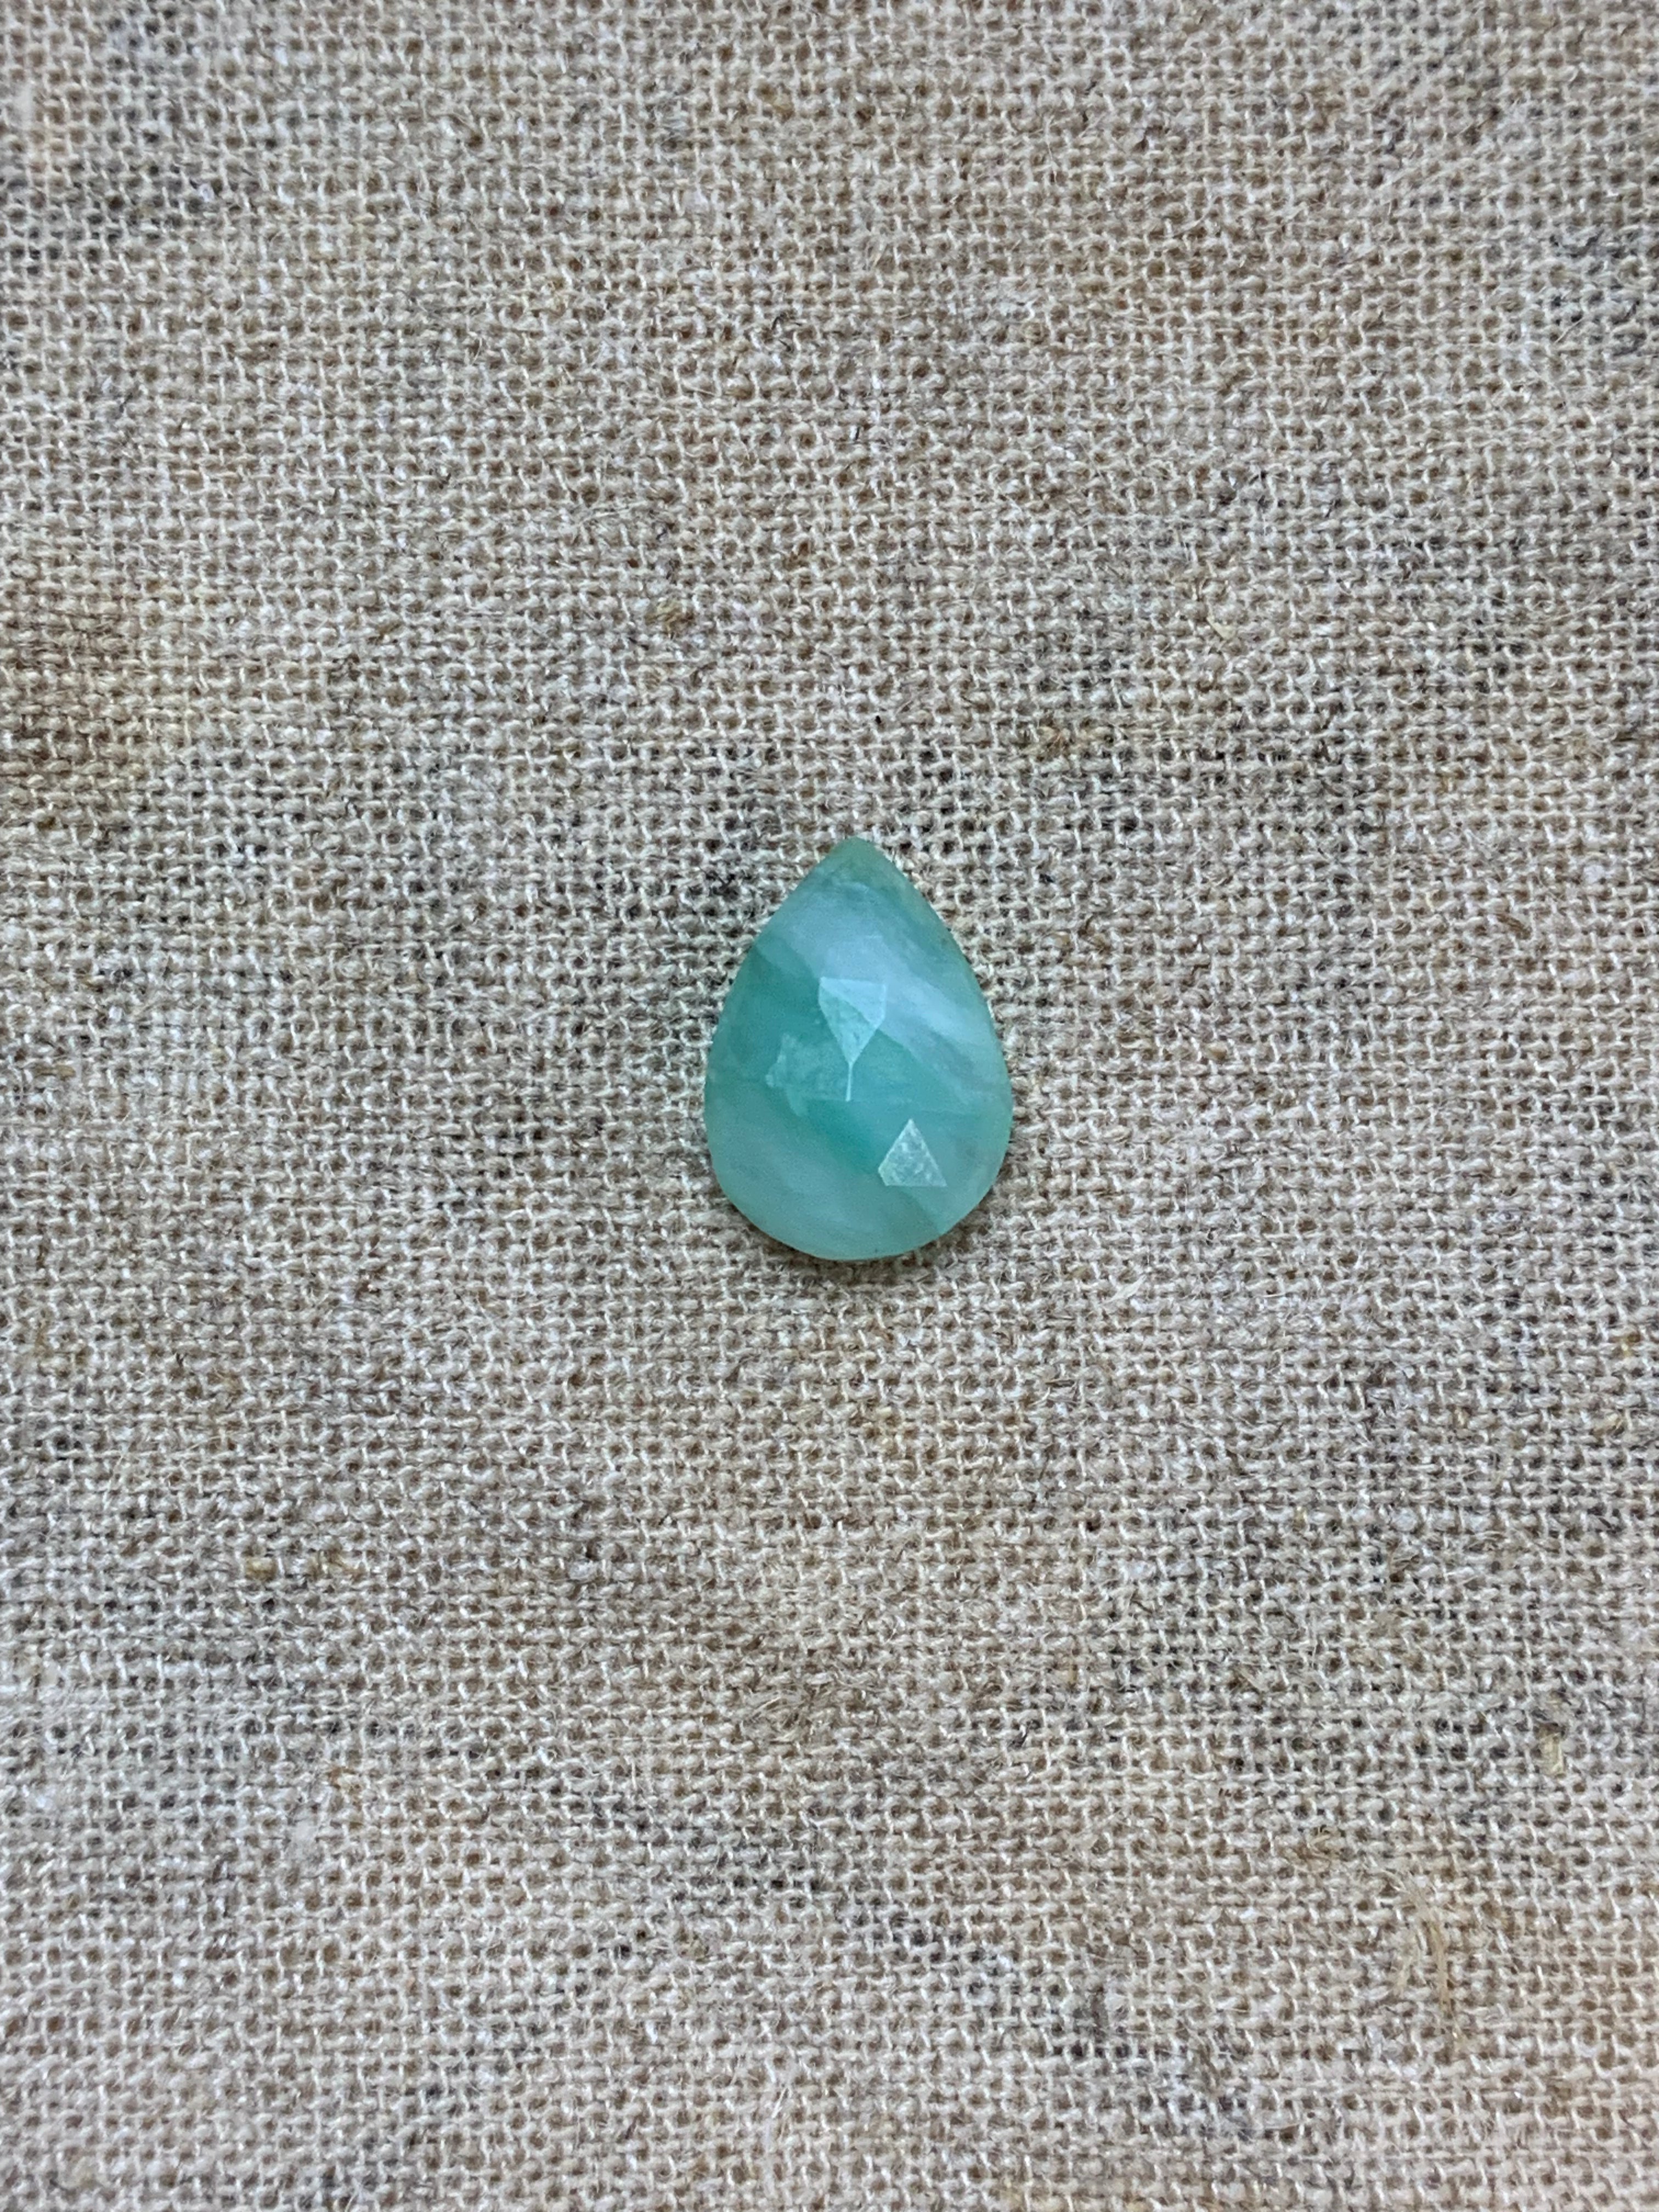 Teardrop Peruvian Opal